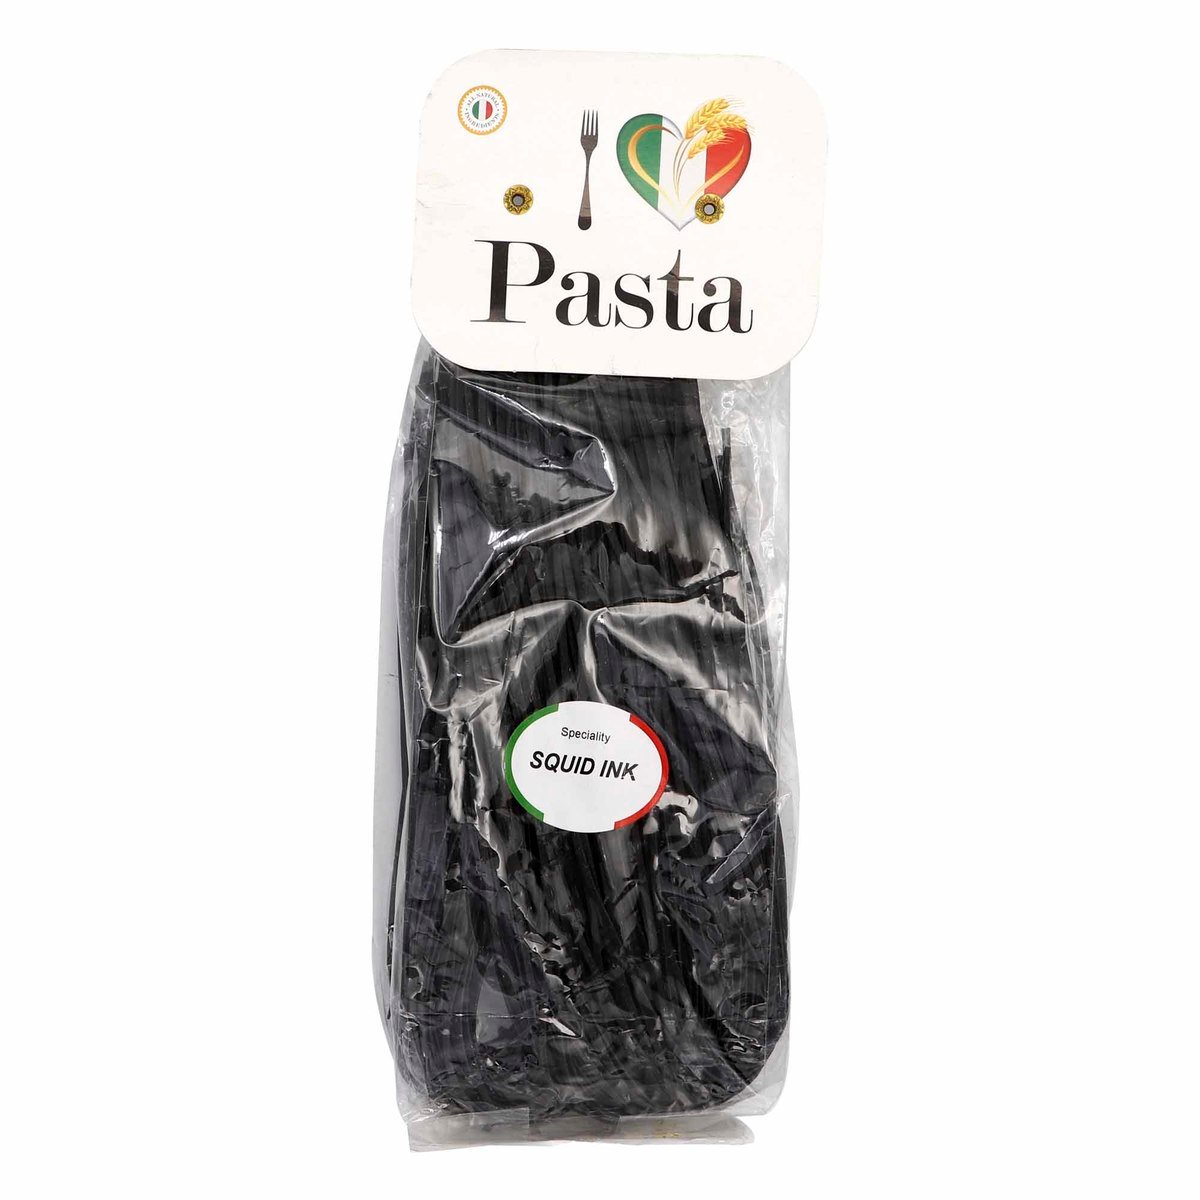 I Love Italia-Squid Ink Tagliatelle Pasta 250 g